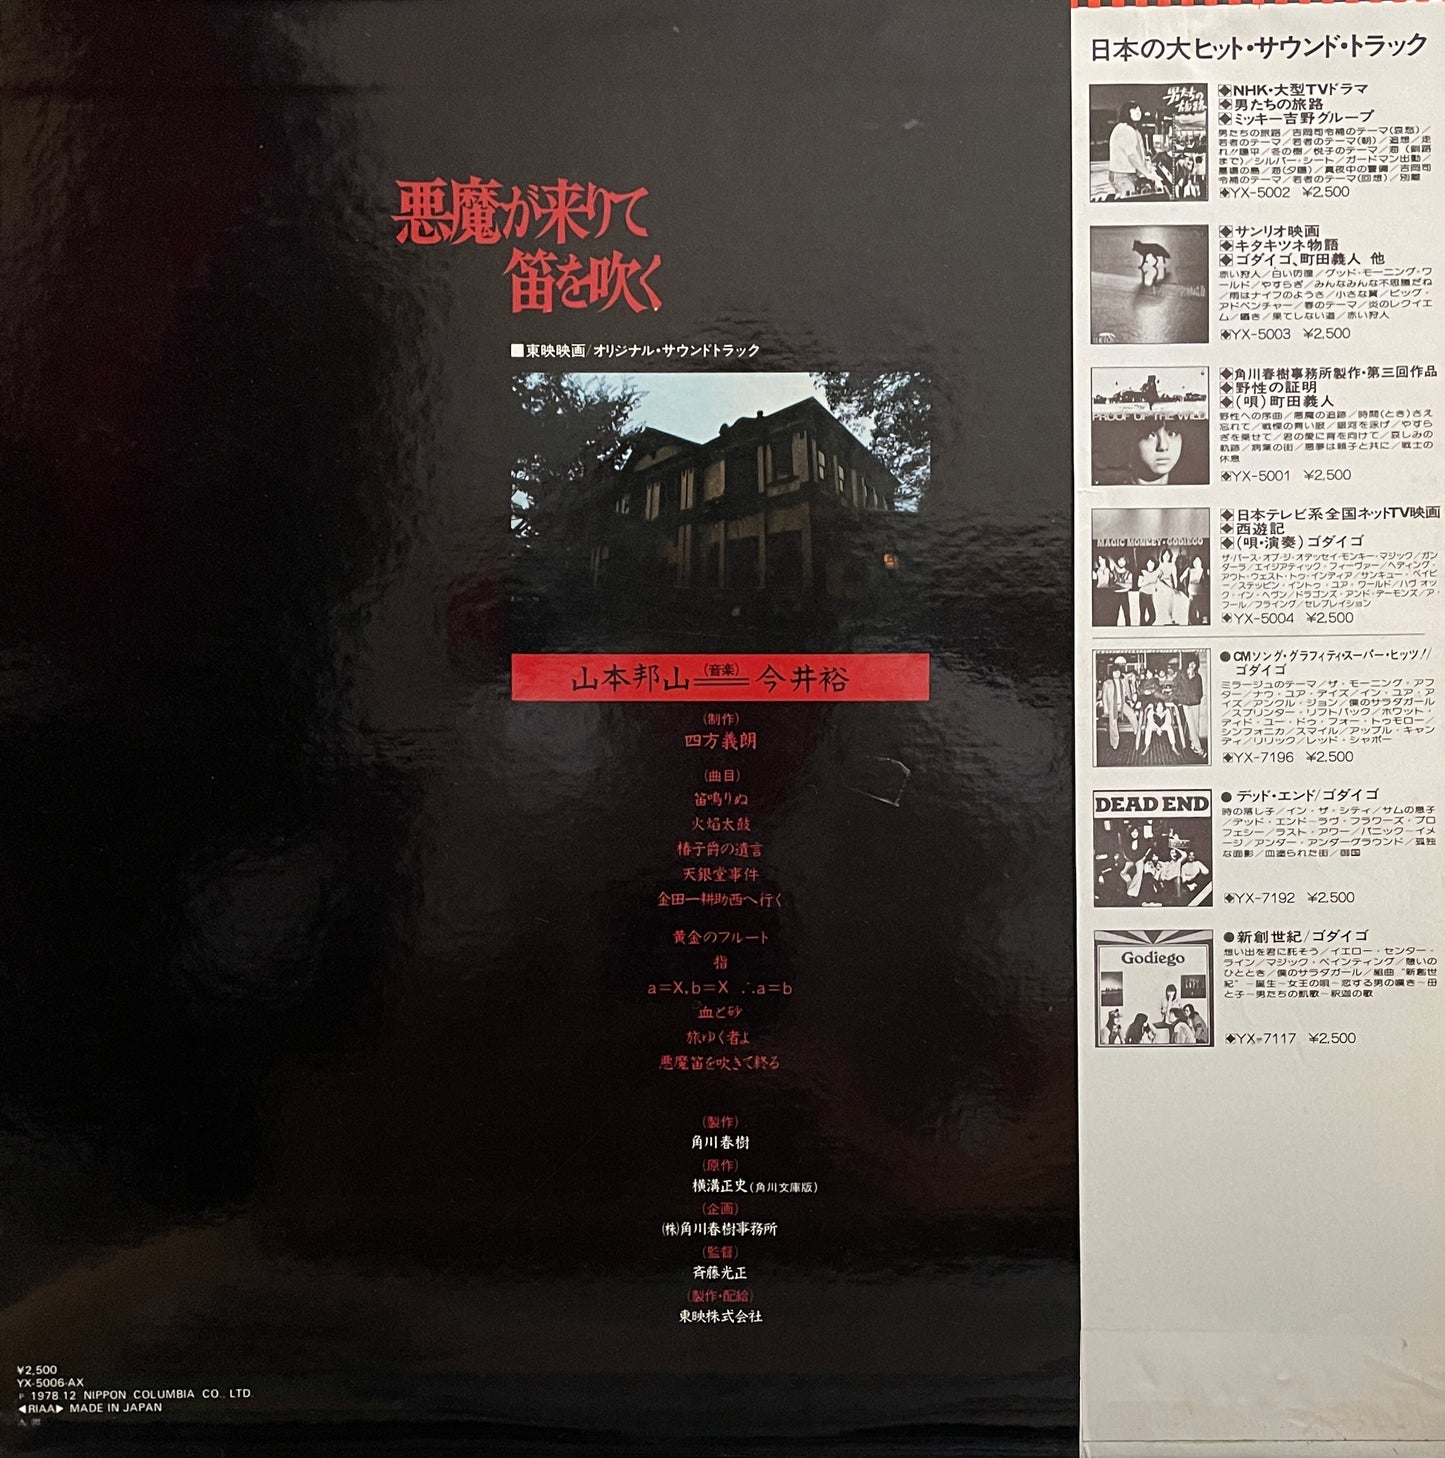 Hozan Yamamoto & Yu Imai "悪魔が来りて笛を吹く" (1978)